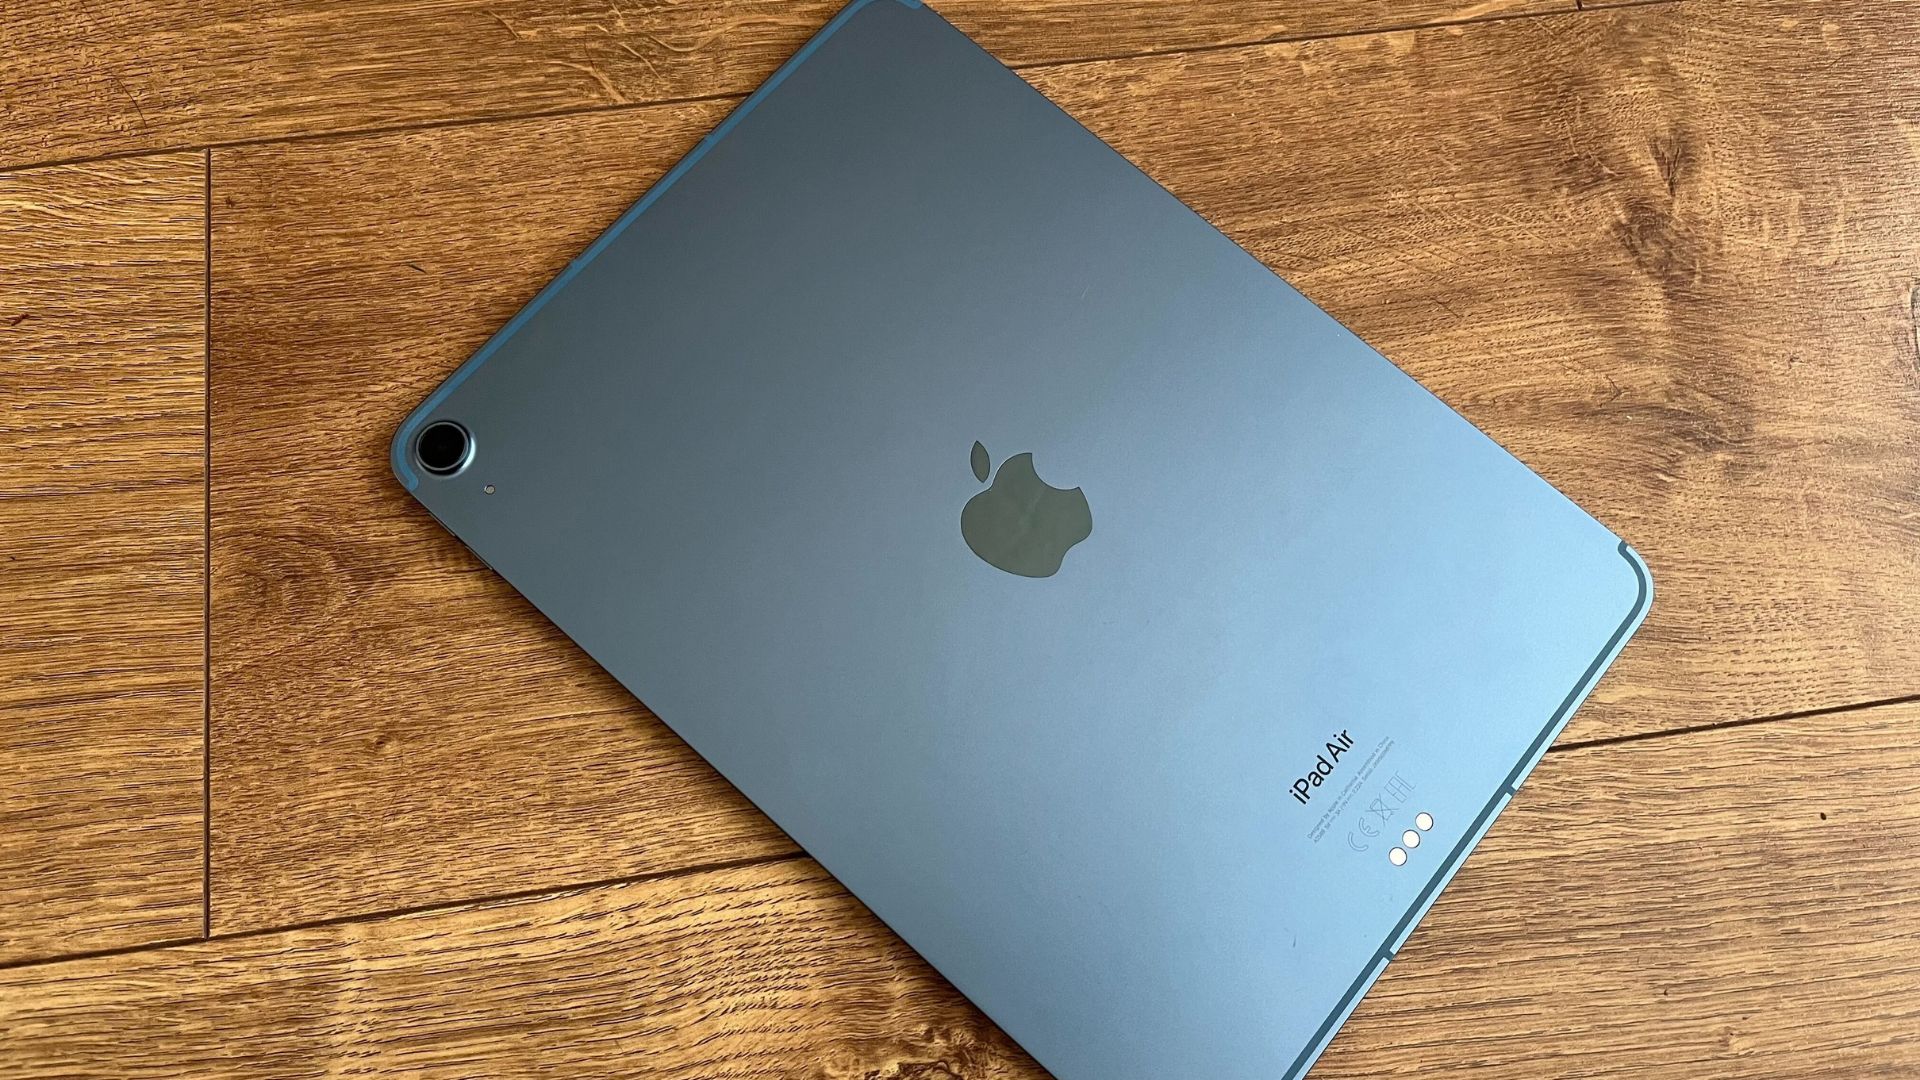 Jeden z najlepszych iPadów, iPad Air, w kolorze czarnym, leżał na ekranie na drewnianej powierzchni.  Widzimy jego tył, pokazujący logo Apple pośrodku i mały pojedynczy pierścień aparatu w prawym górnym rogu.